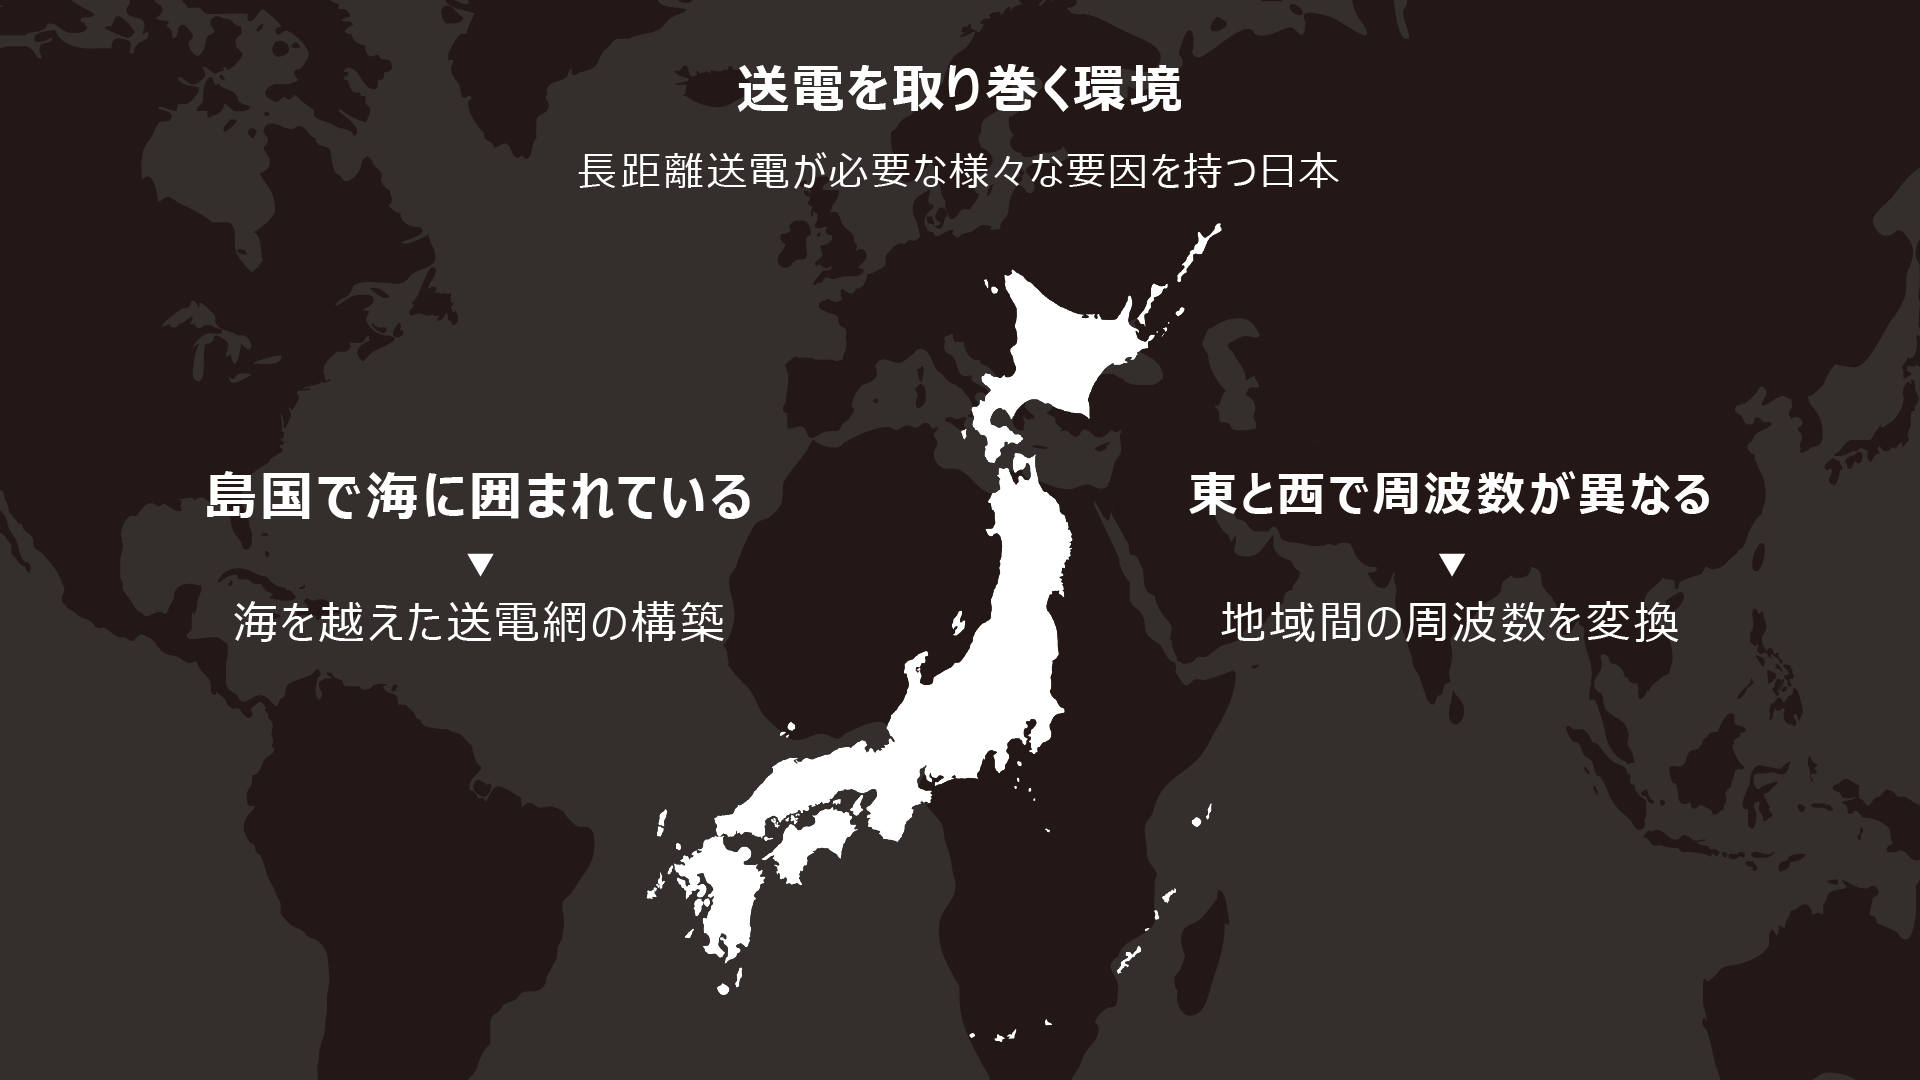 電気を取り巻く環境 長距離伝送が必要な様々な要因を持つ日本